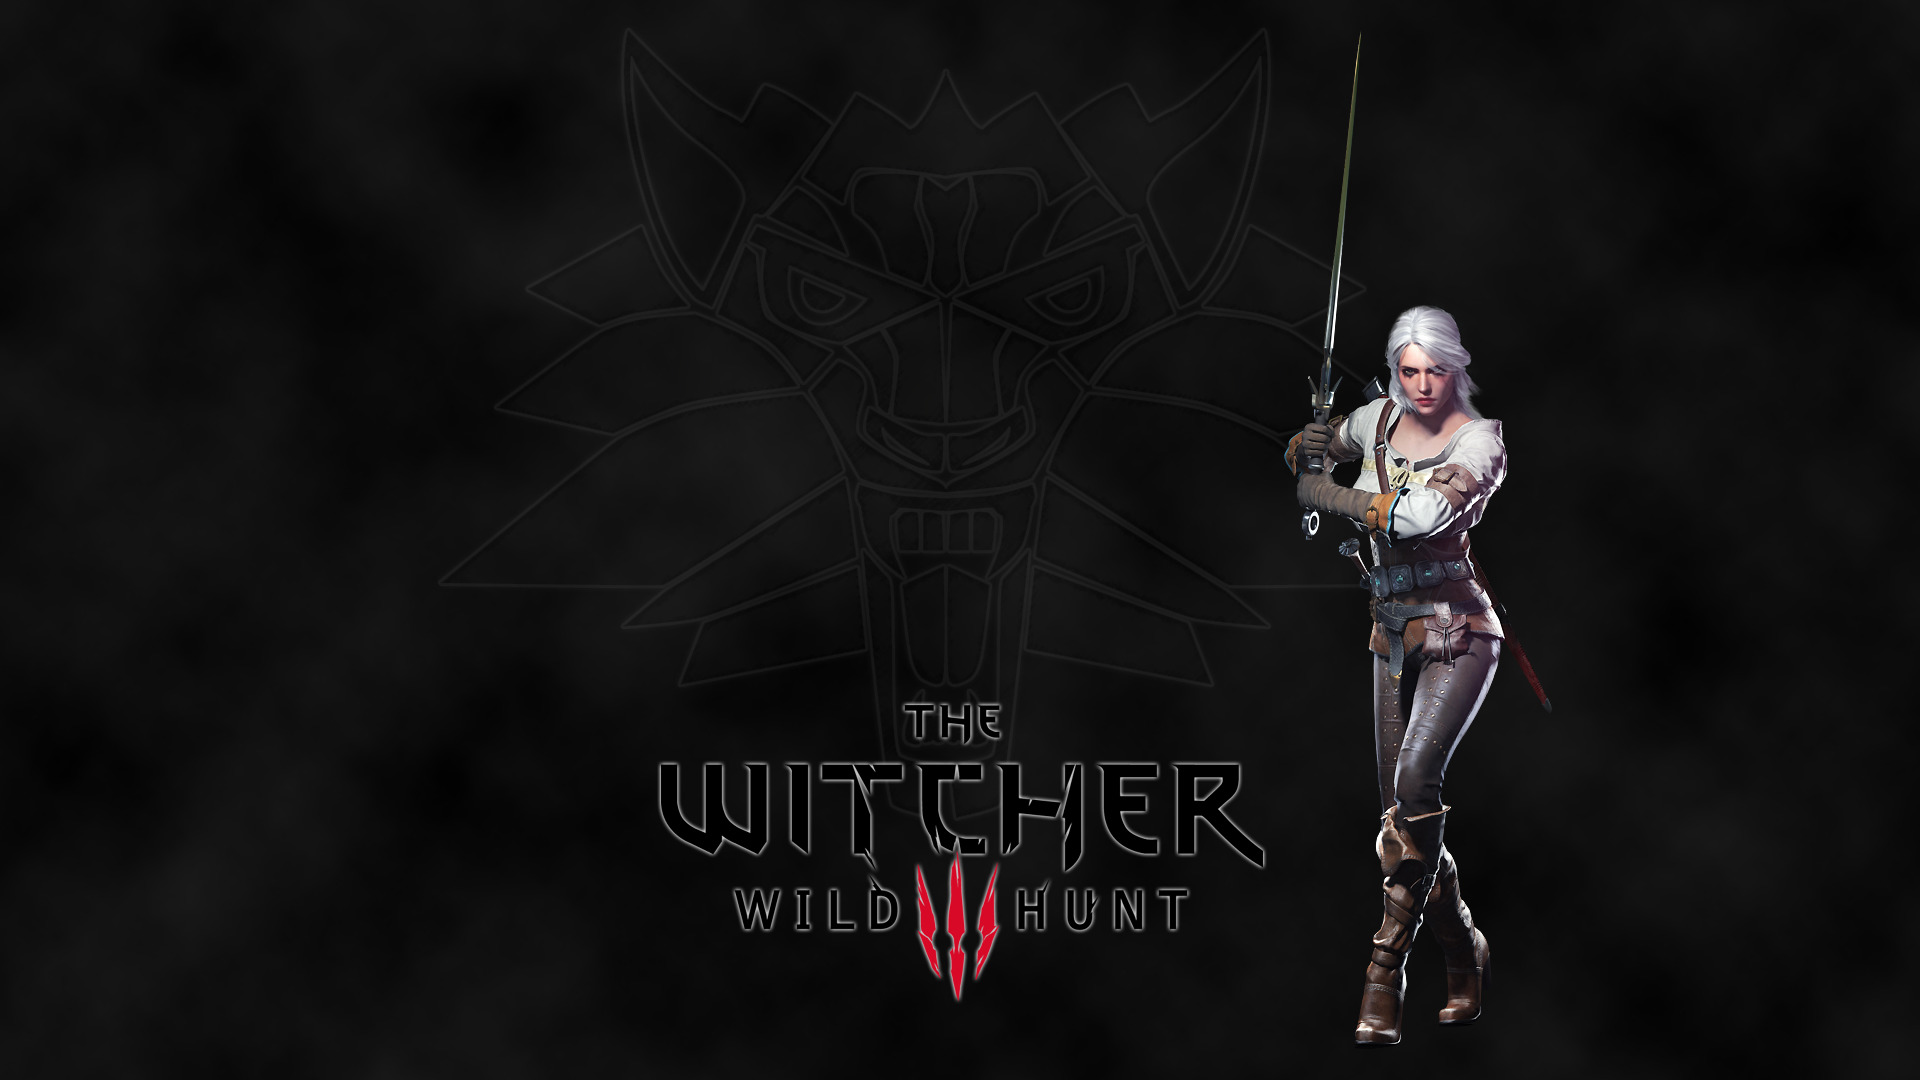 The Witcher 3: Wild Hunt, Ciri, Cirilla Fiona Elen Riannon Wallpaper